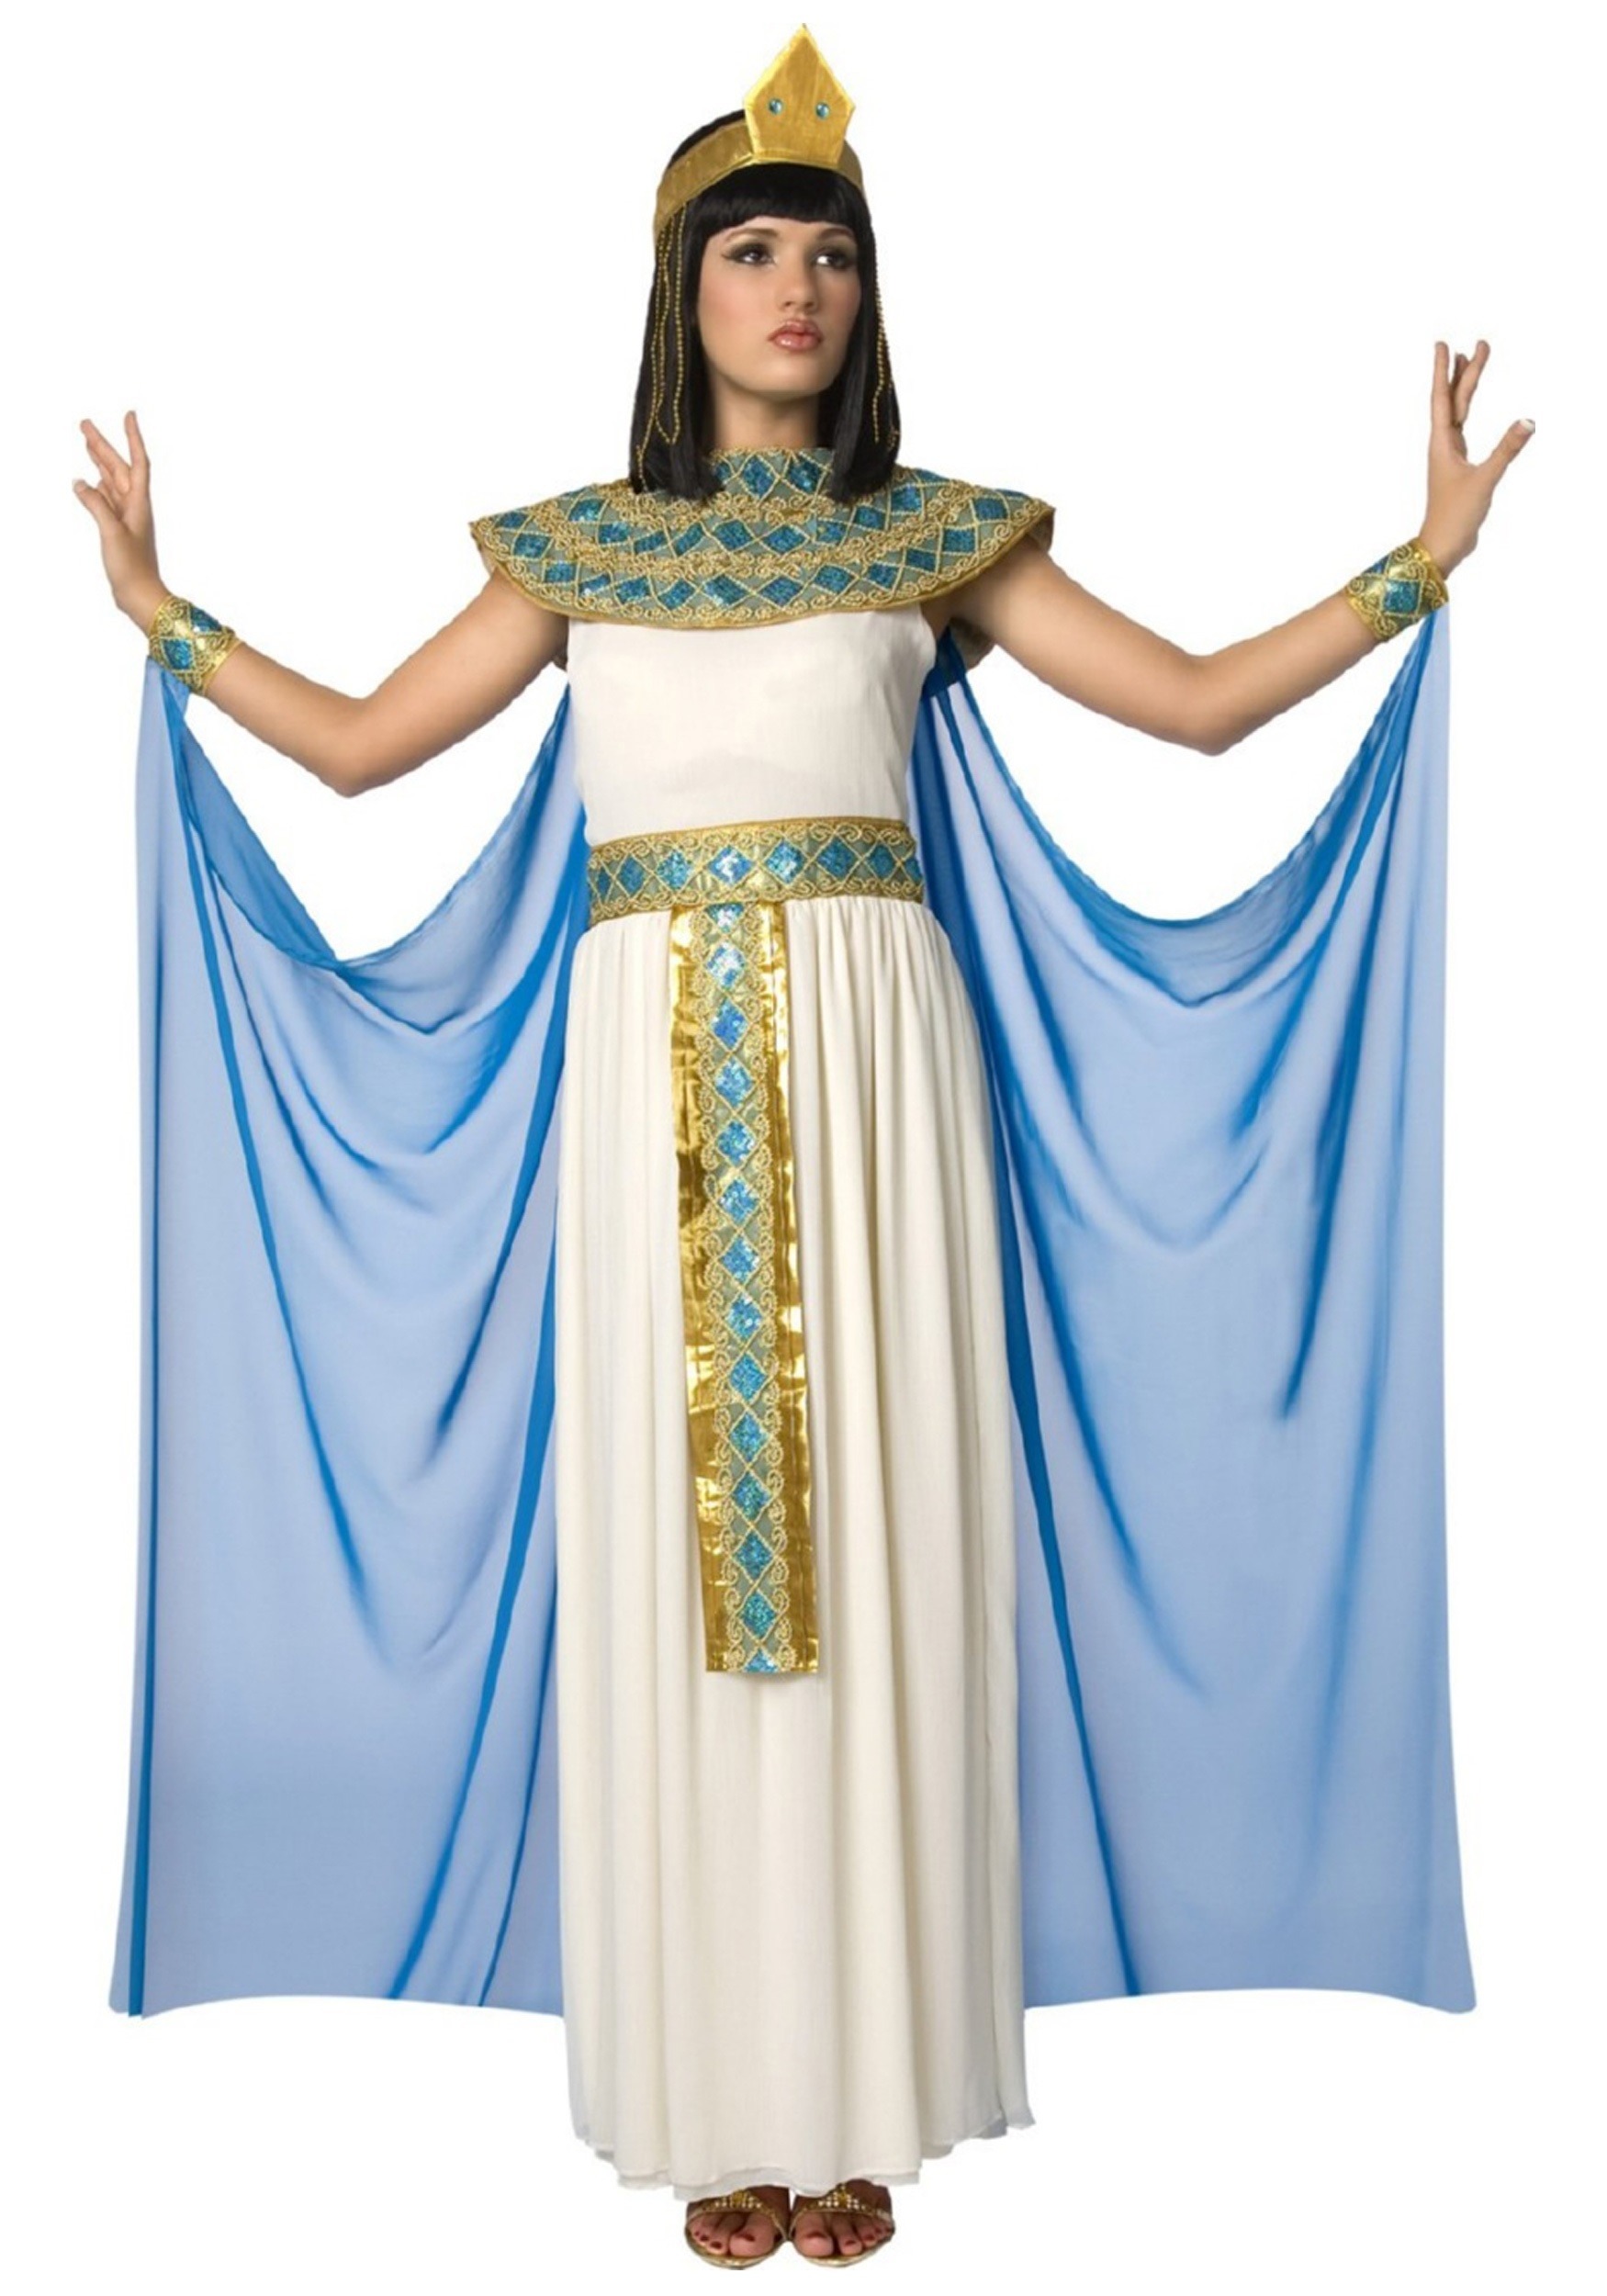 Queen Cleopatra Costume For Women